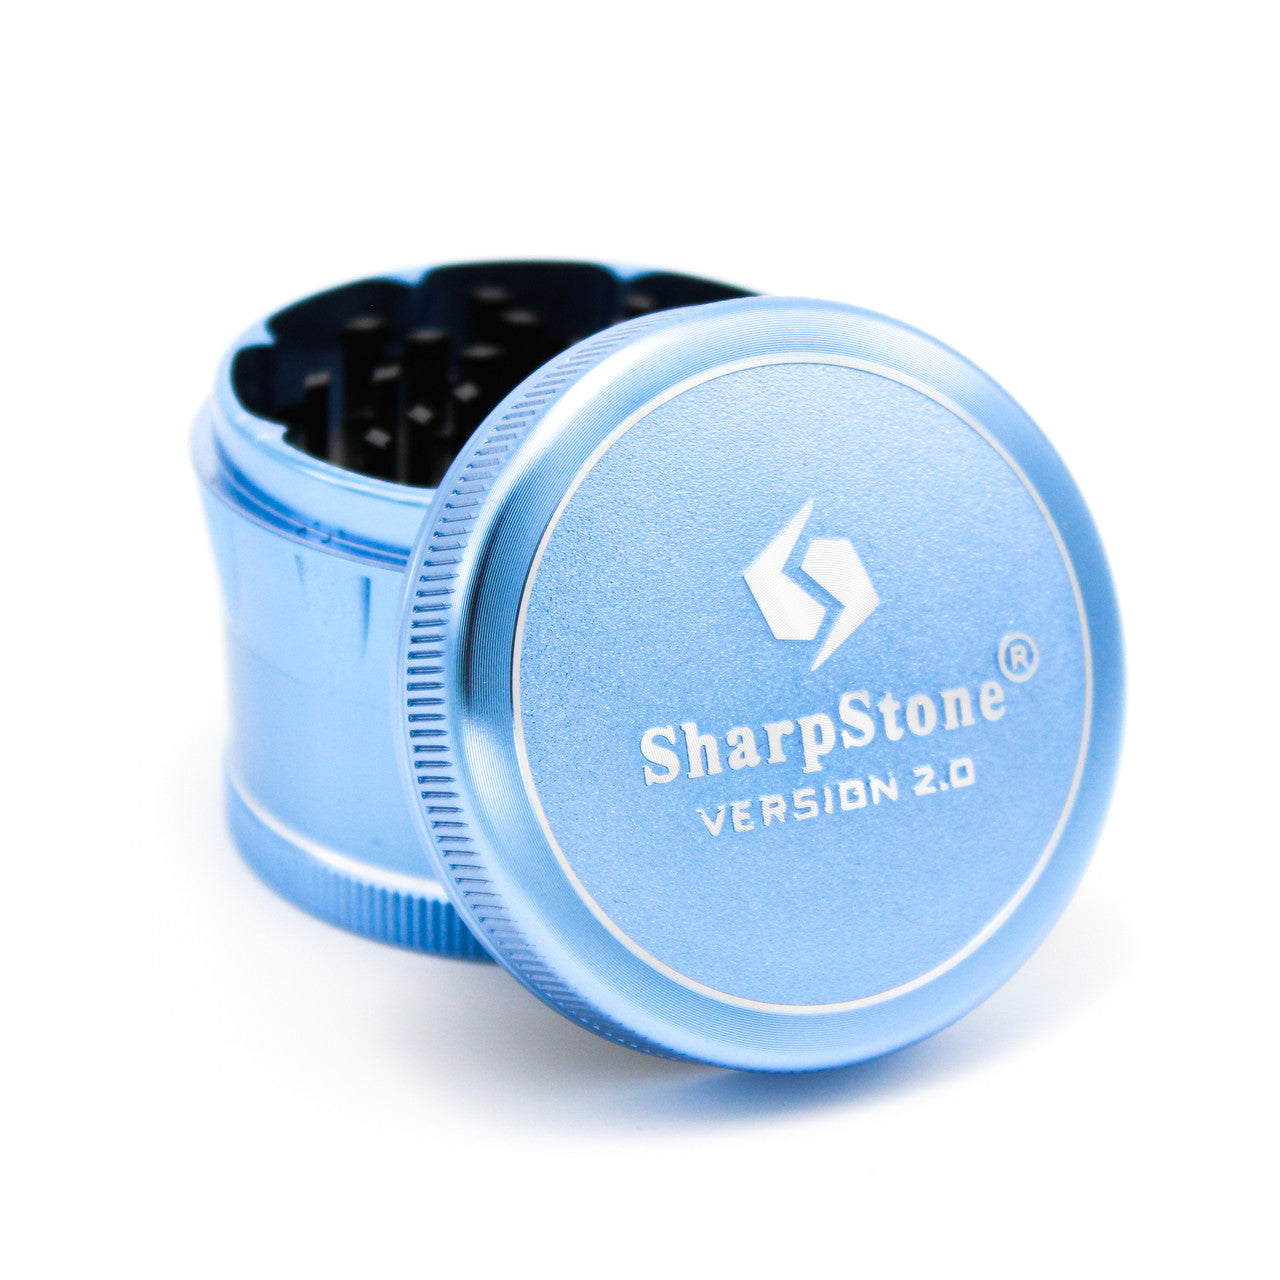 SharpStone V2 Hard Top 4 Piece Herb Grinder for Sale